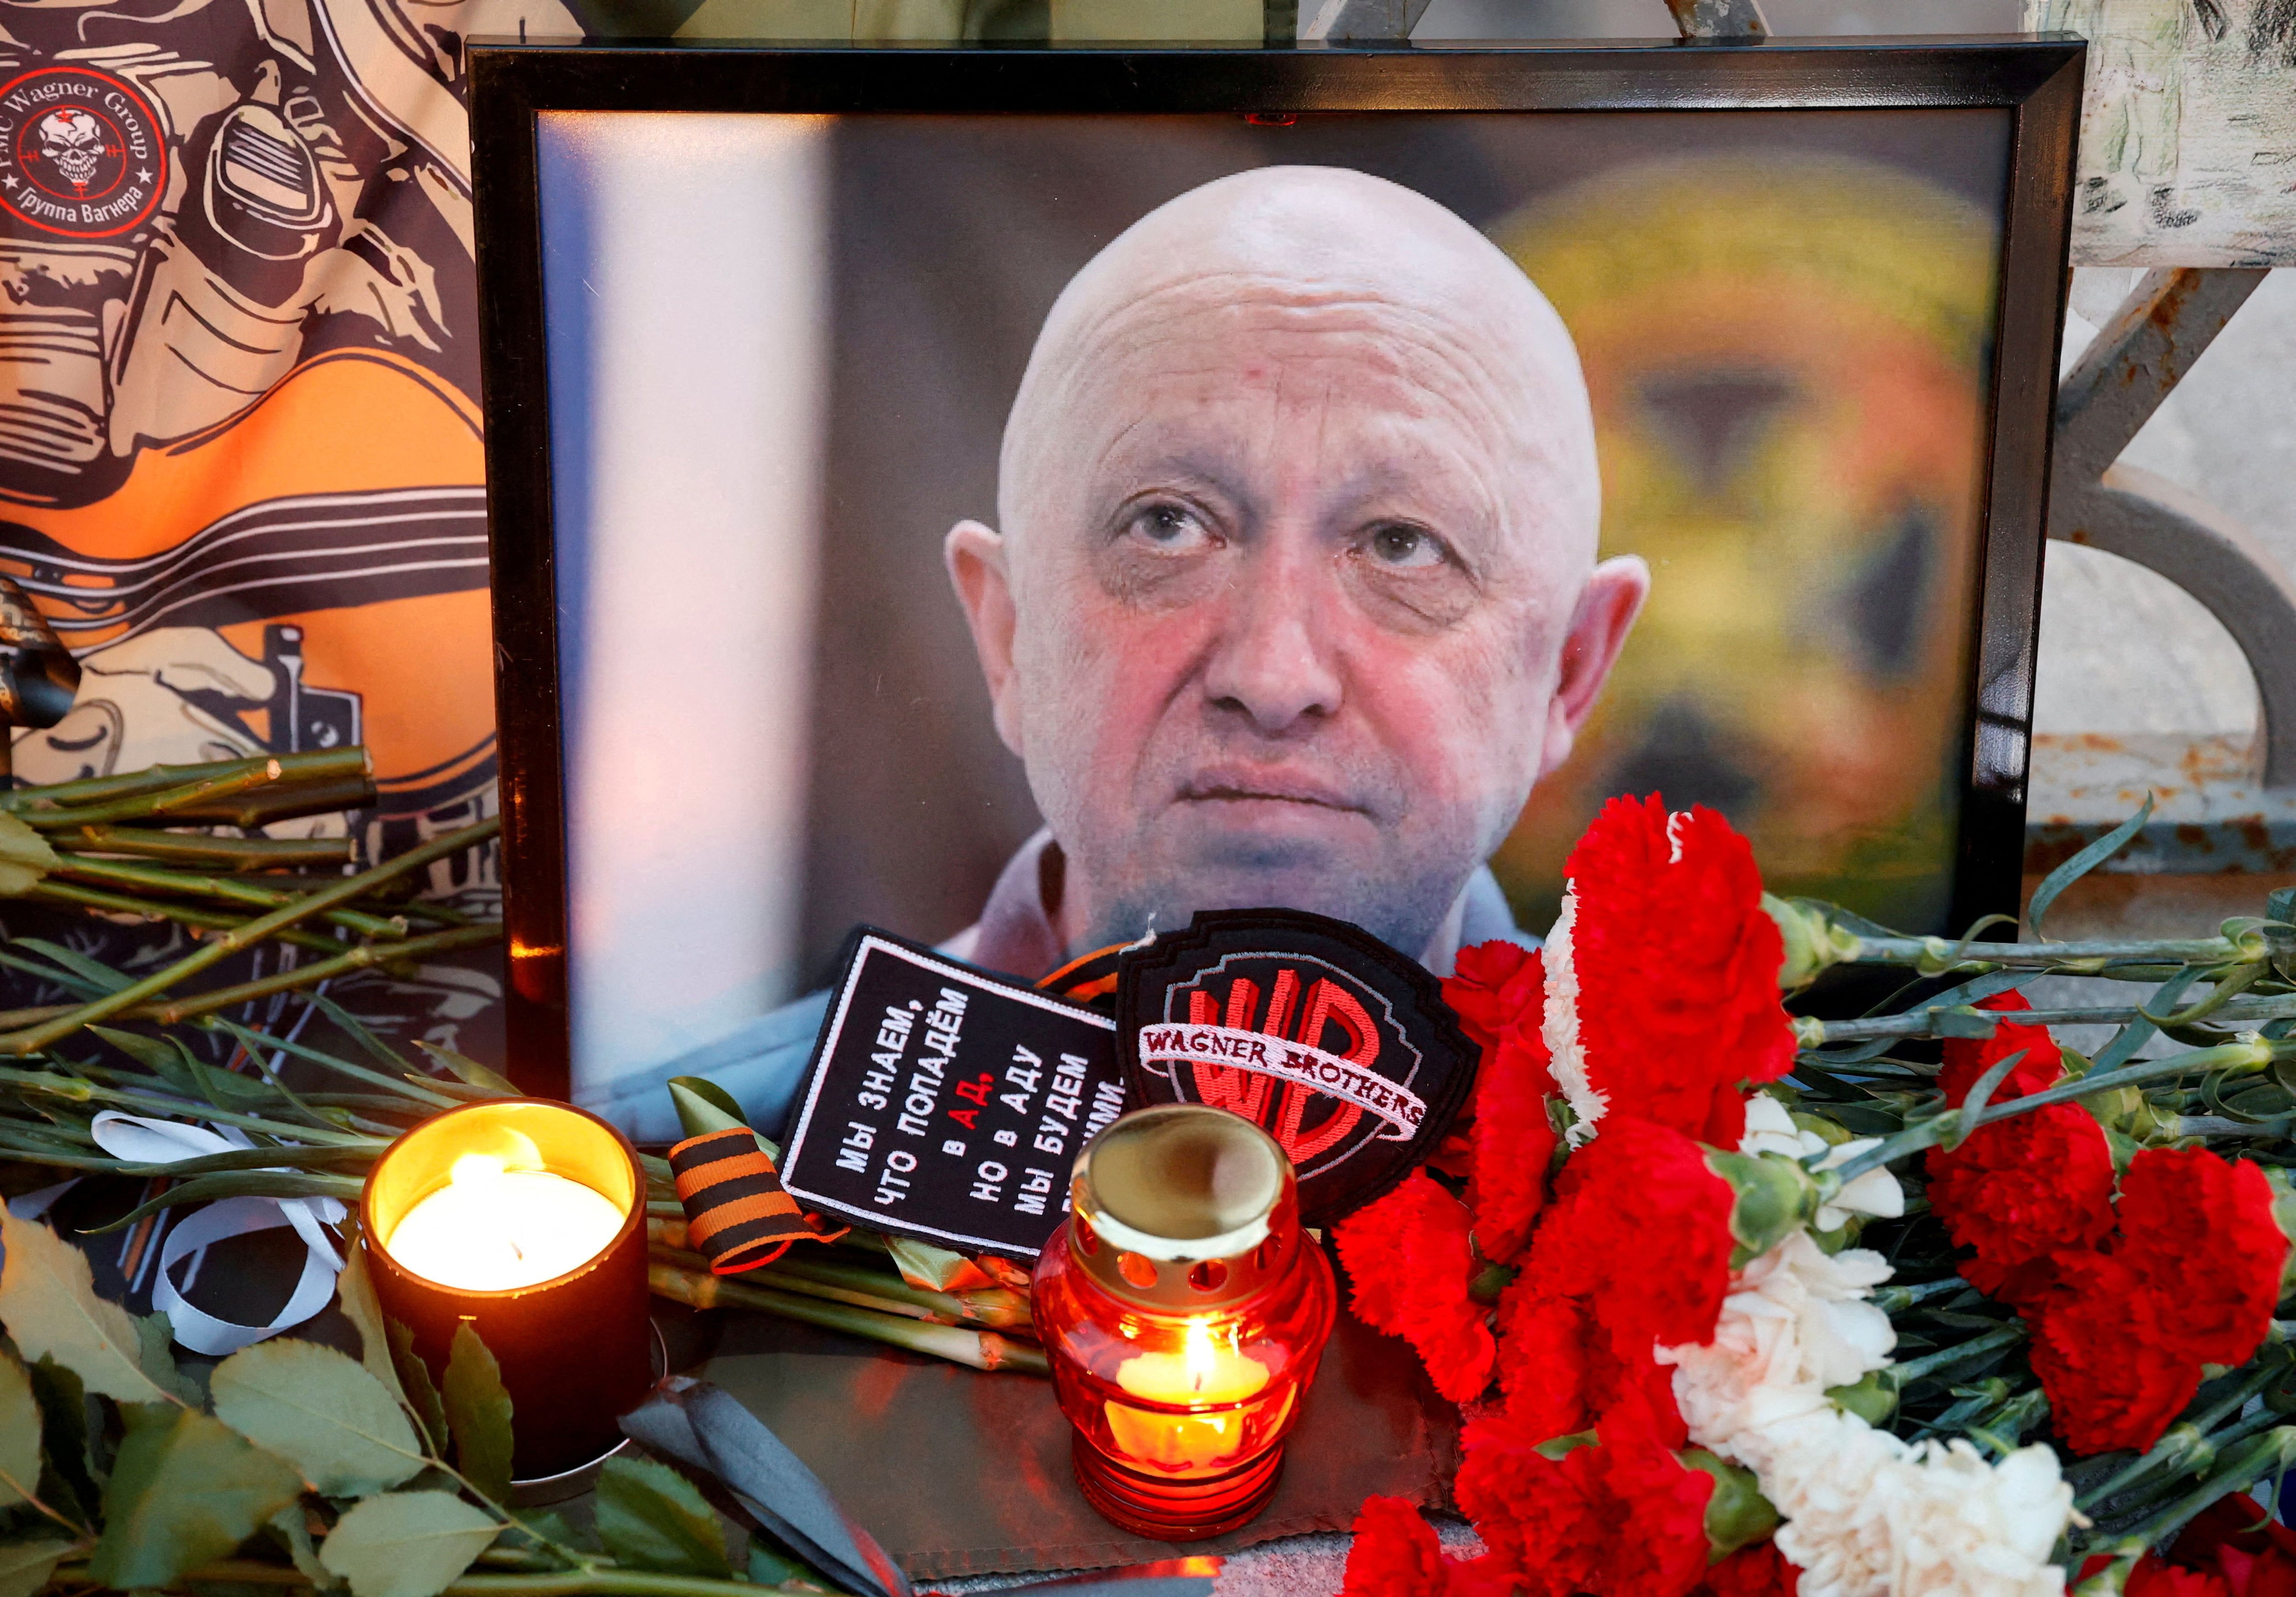 Un cercano colaborador de Prigozhin, Maxim Shugaley, aseguró que líder rebelde está muerto, víctima de ”elementos” tanto en Rusia como en el extranjero. (REUTERS)